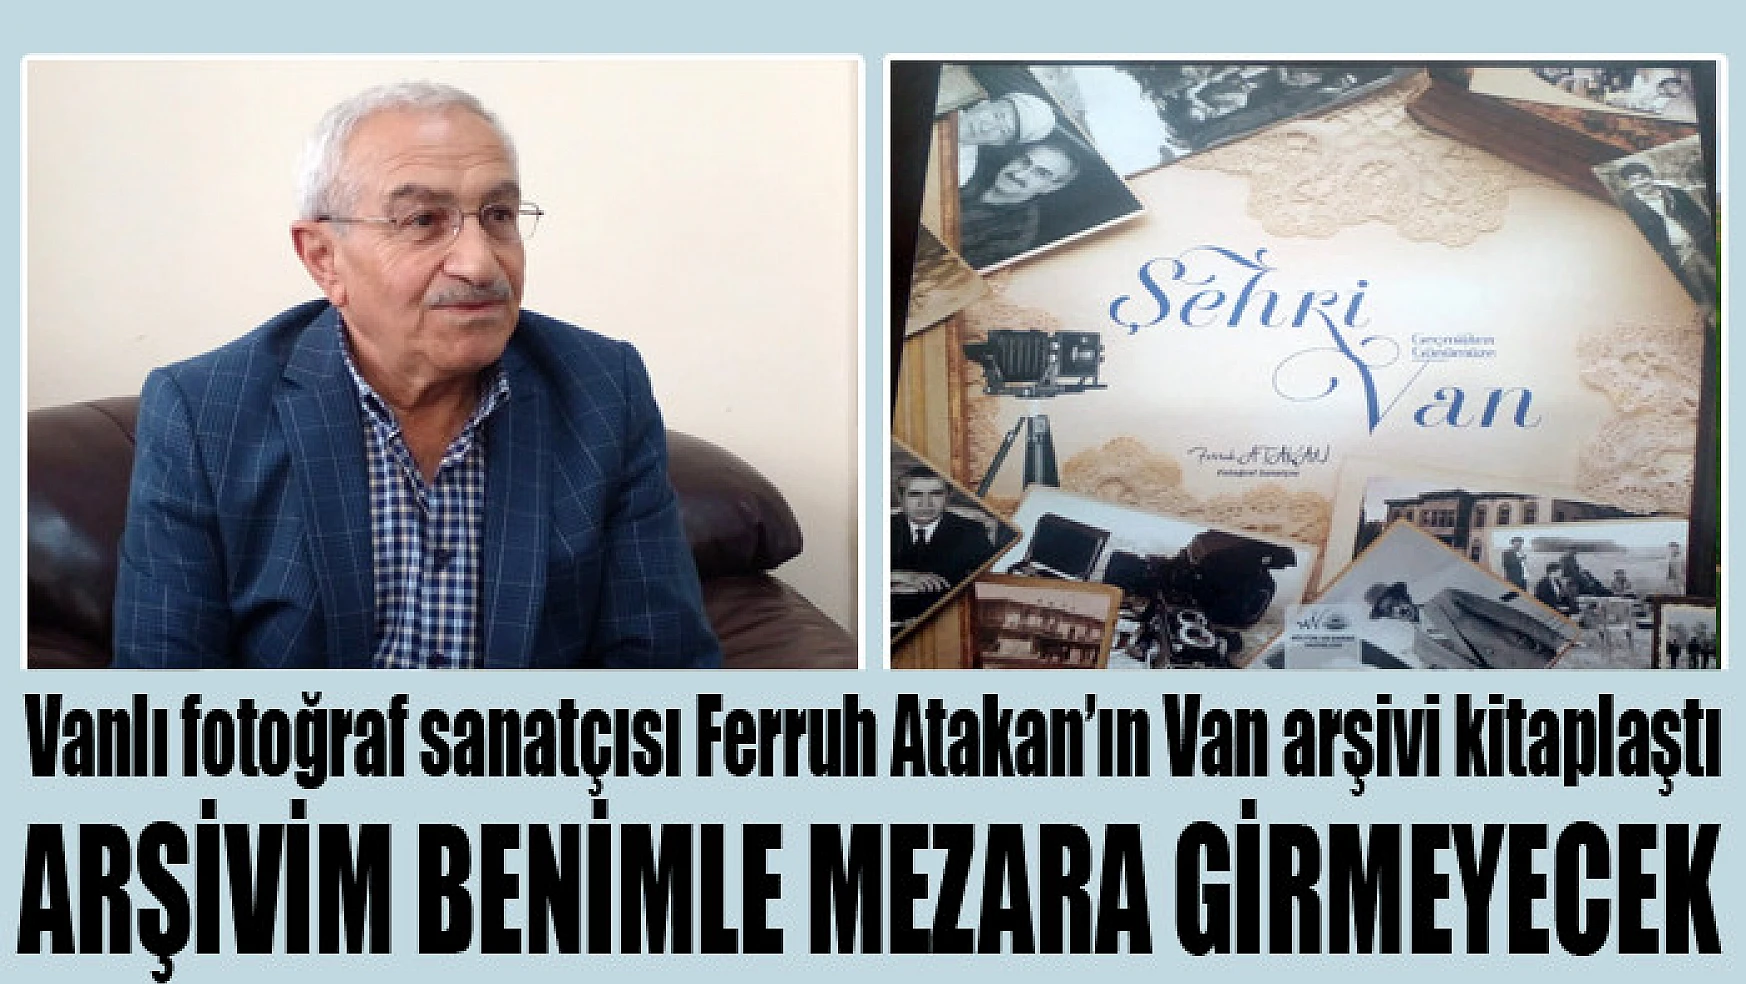 Ferruh Atakan'ın Van arşivi kitaplaştı Arşivim benimle mezara girmeyecek